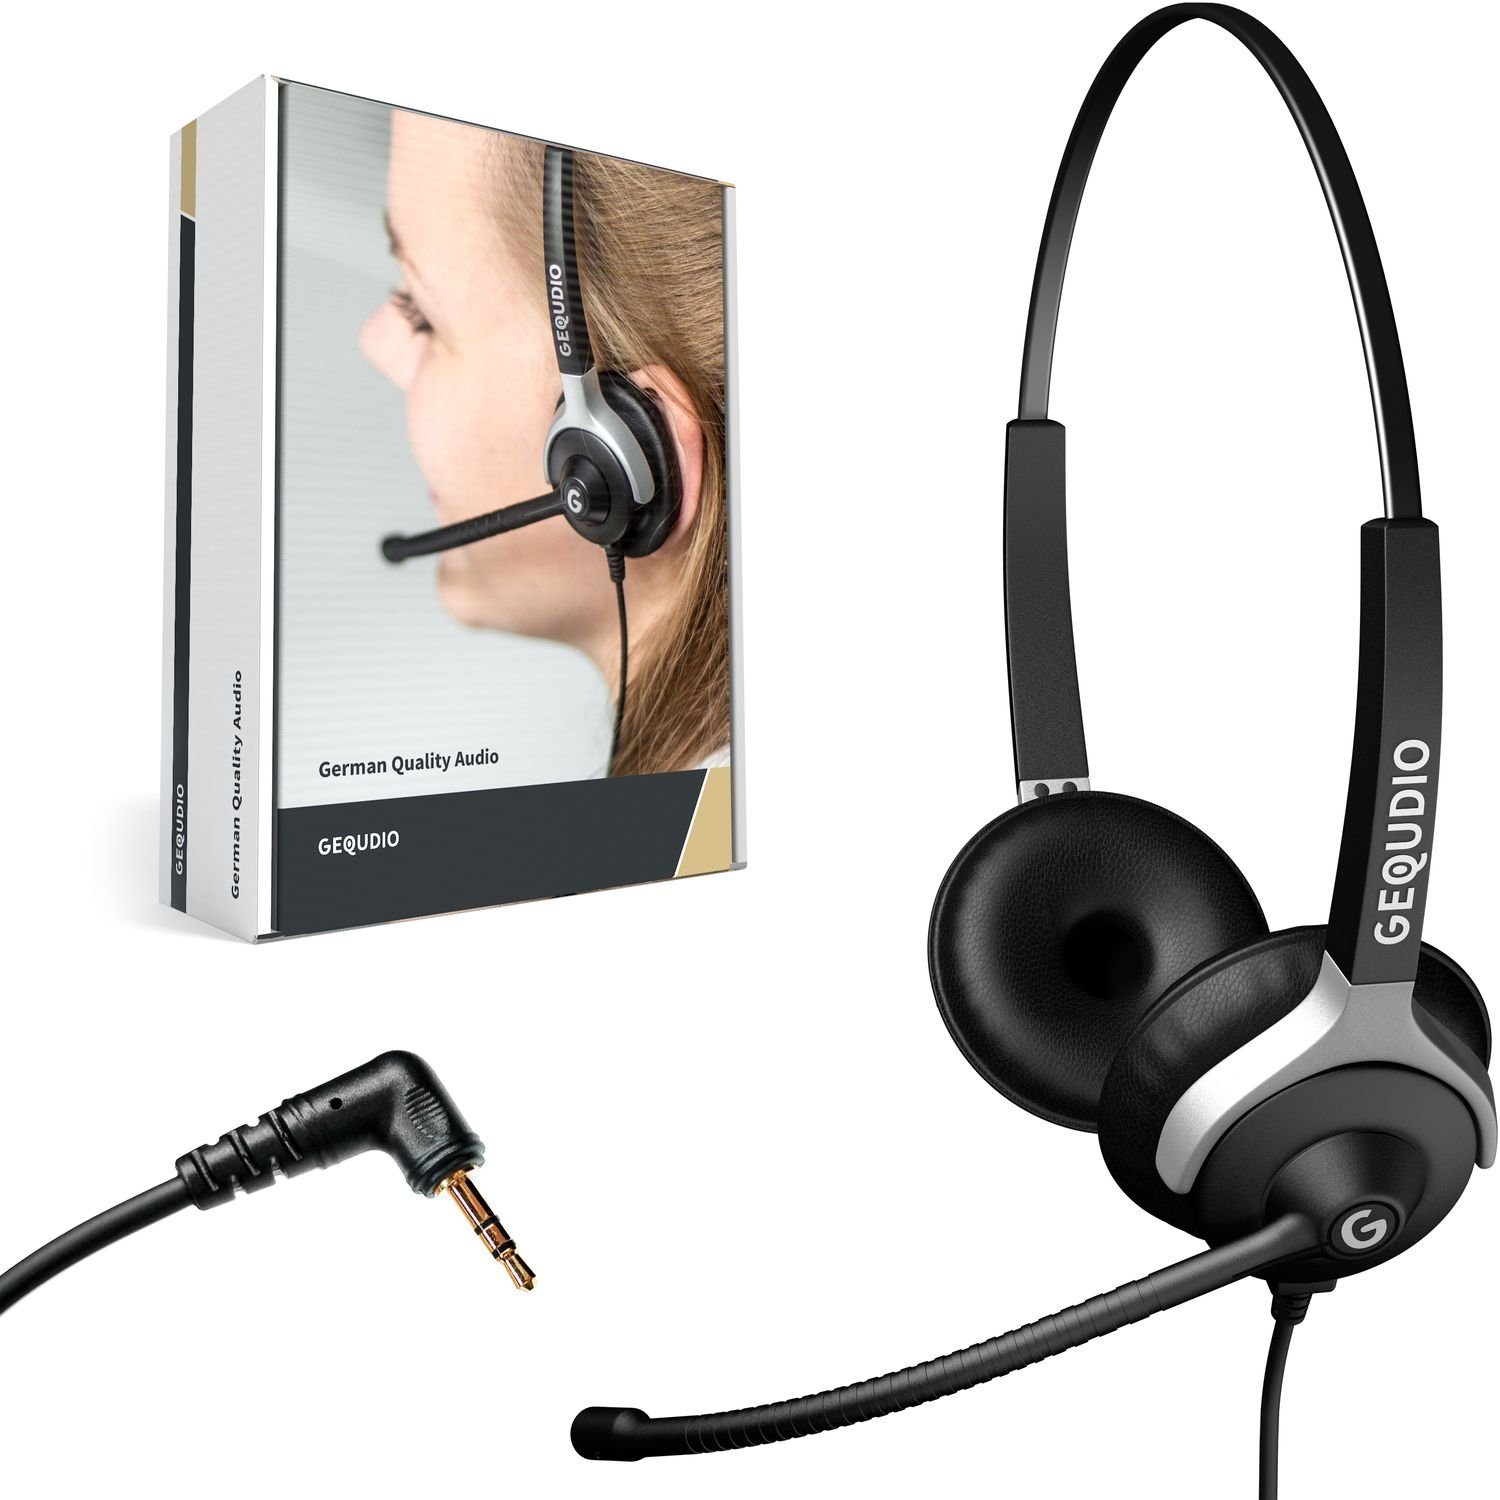 GEQUDIO für Gigaset, Panasonic, Grandstream, 80g Federstahl, für Headset aus Telefone Klinke 2,5mm (2-Ohr-Headset, Bügel mit mit Anschlusskabel) Endgeräte, leicht, inklusive mehrere Wechselverschluss Polycom